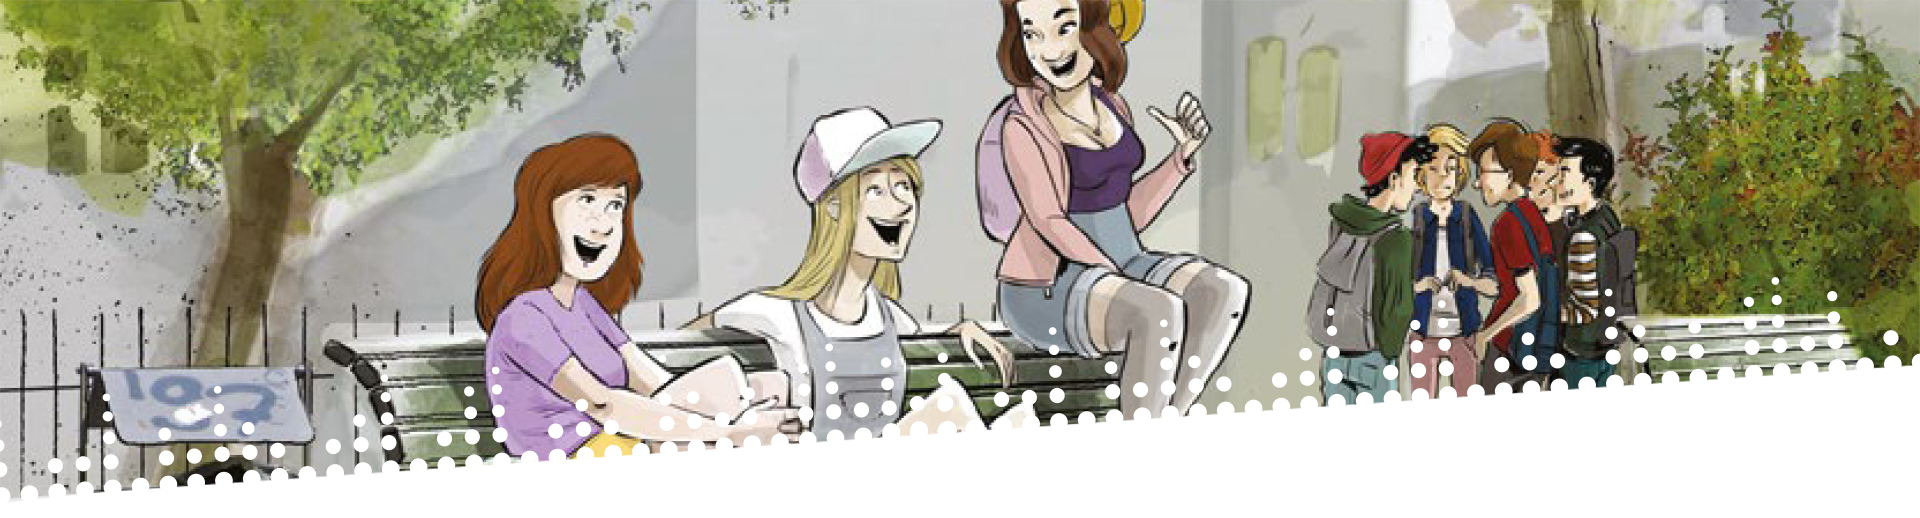 Szene aus "Ninette - Dünn ist nicht dünn genug": drei Mädels sitzen auf einer Bank und daneben ist eine Jungengruppe